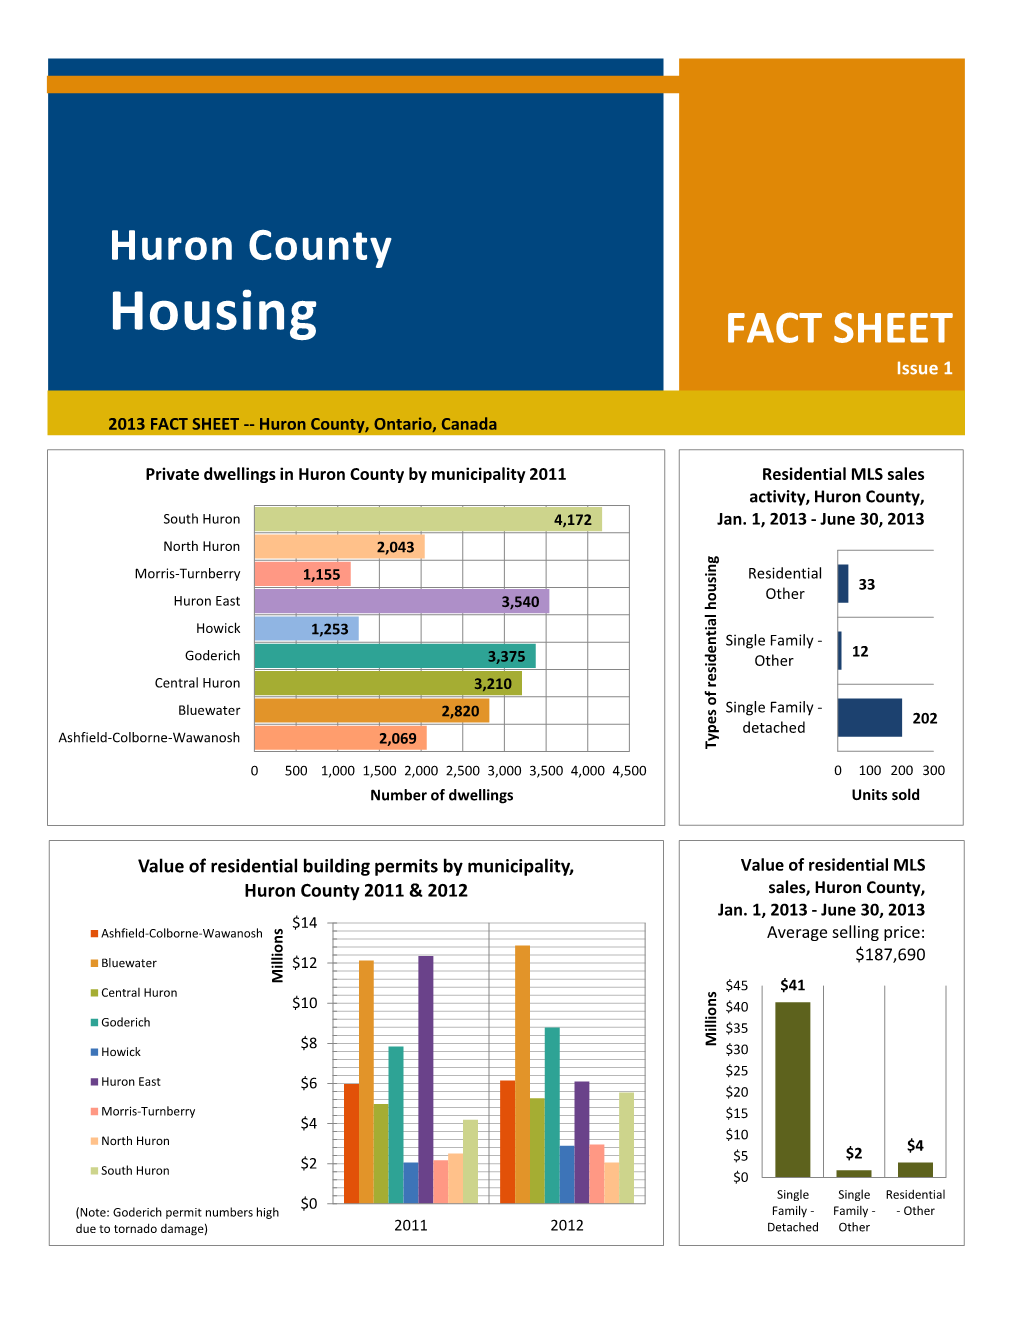 Huron County Housing Fact Sheet